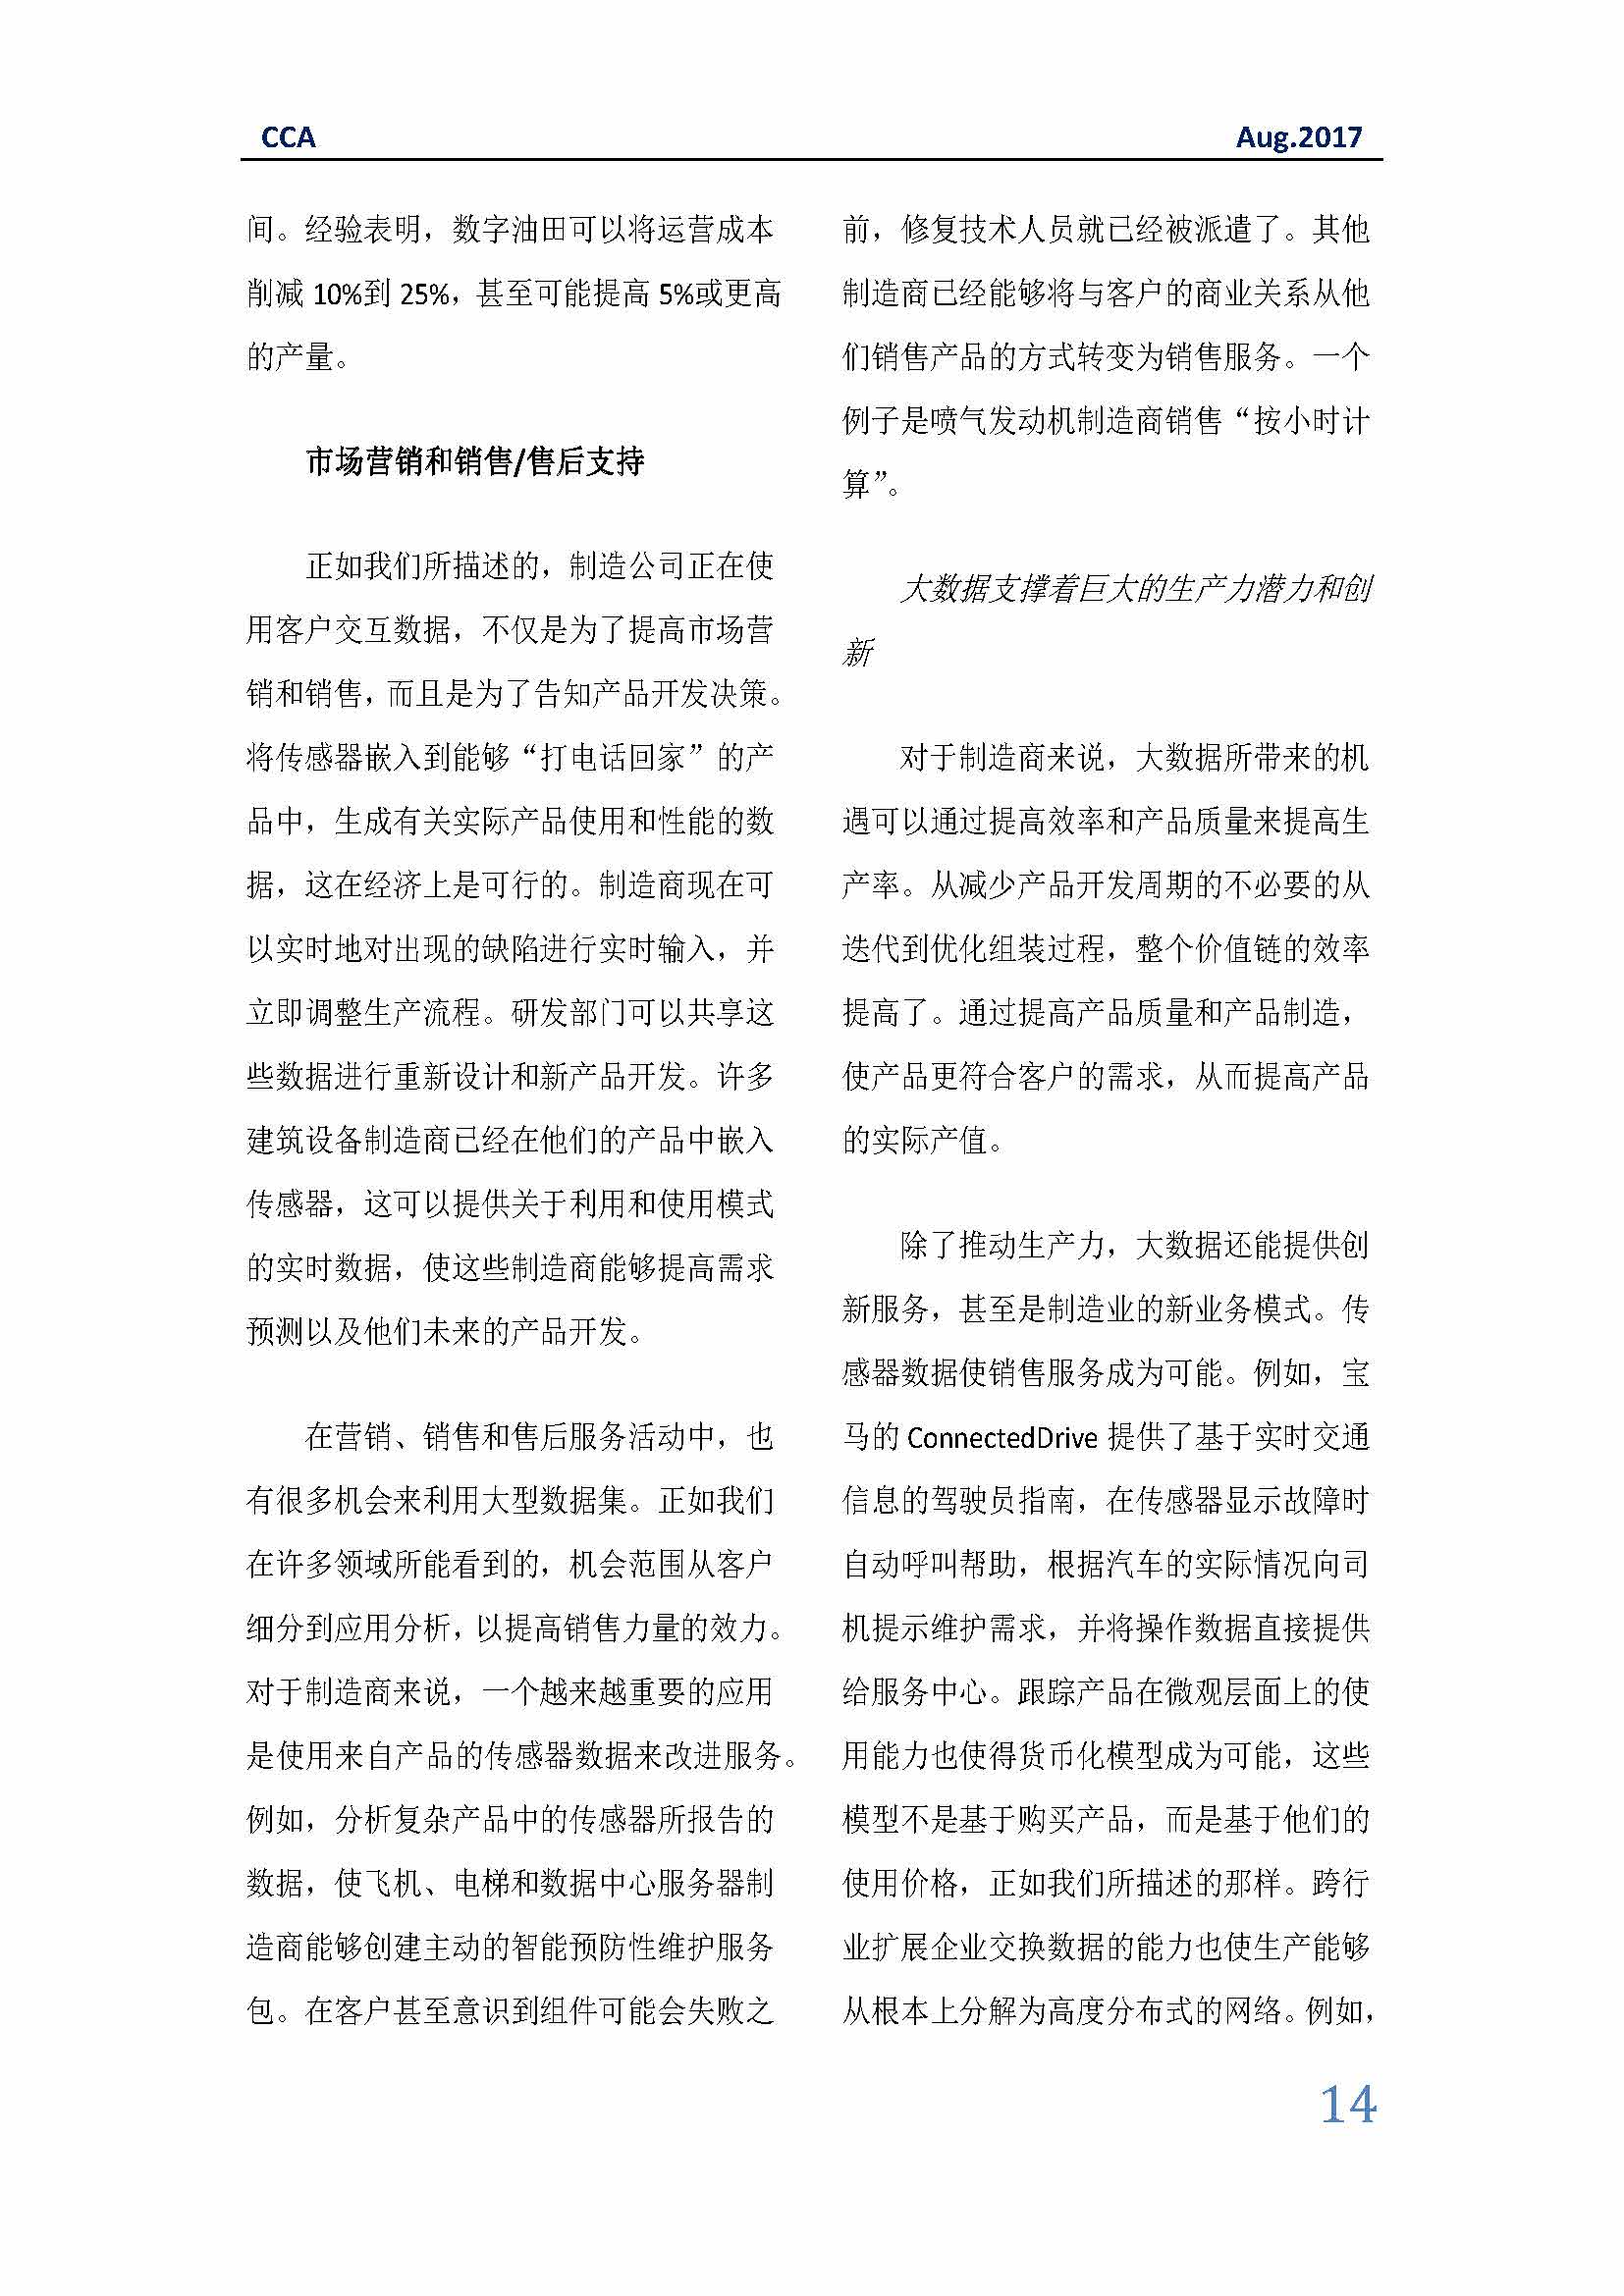 中国科技咨询协会国际快讯（第二十九期）_页面_14.jpg